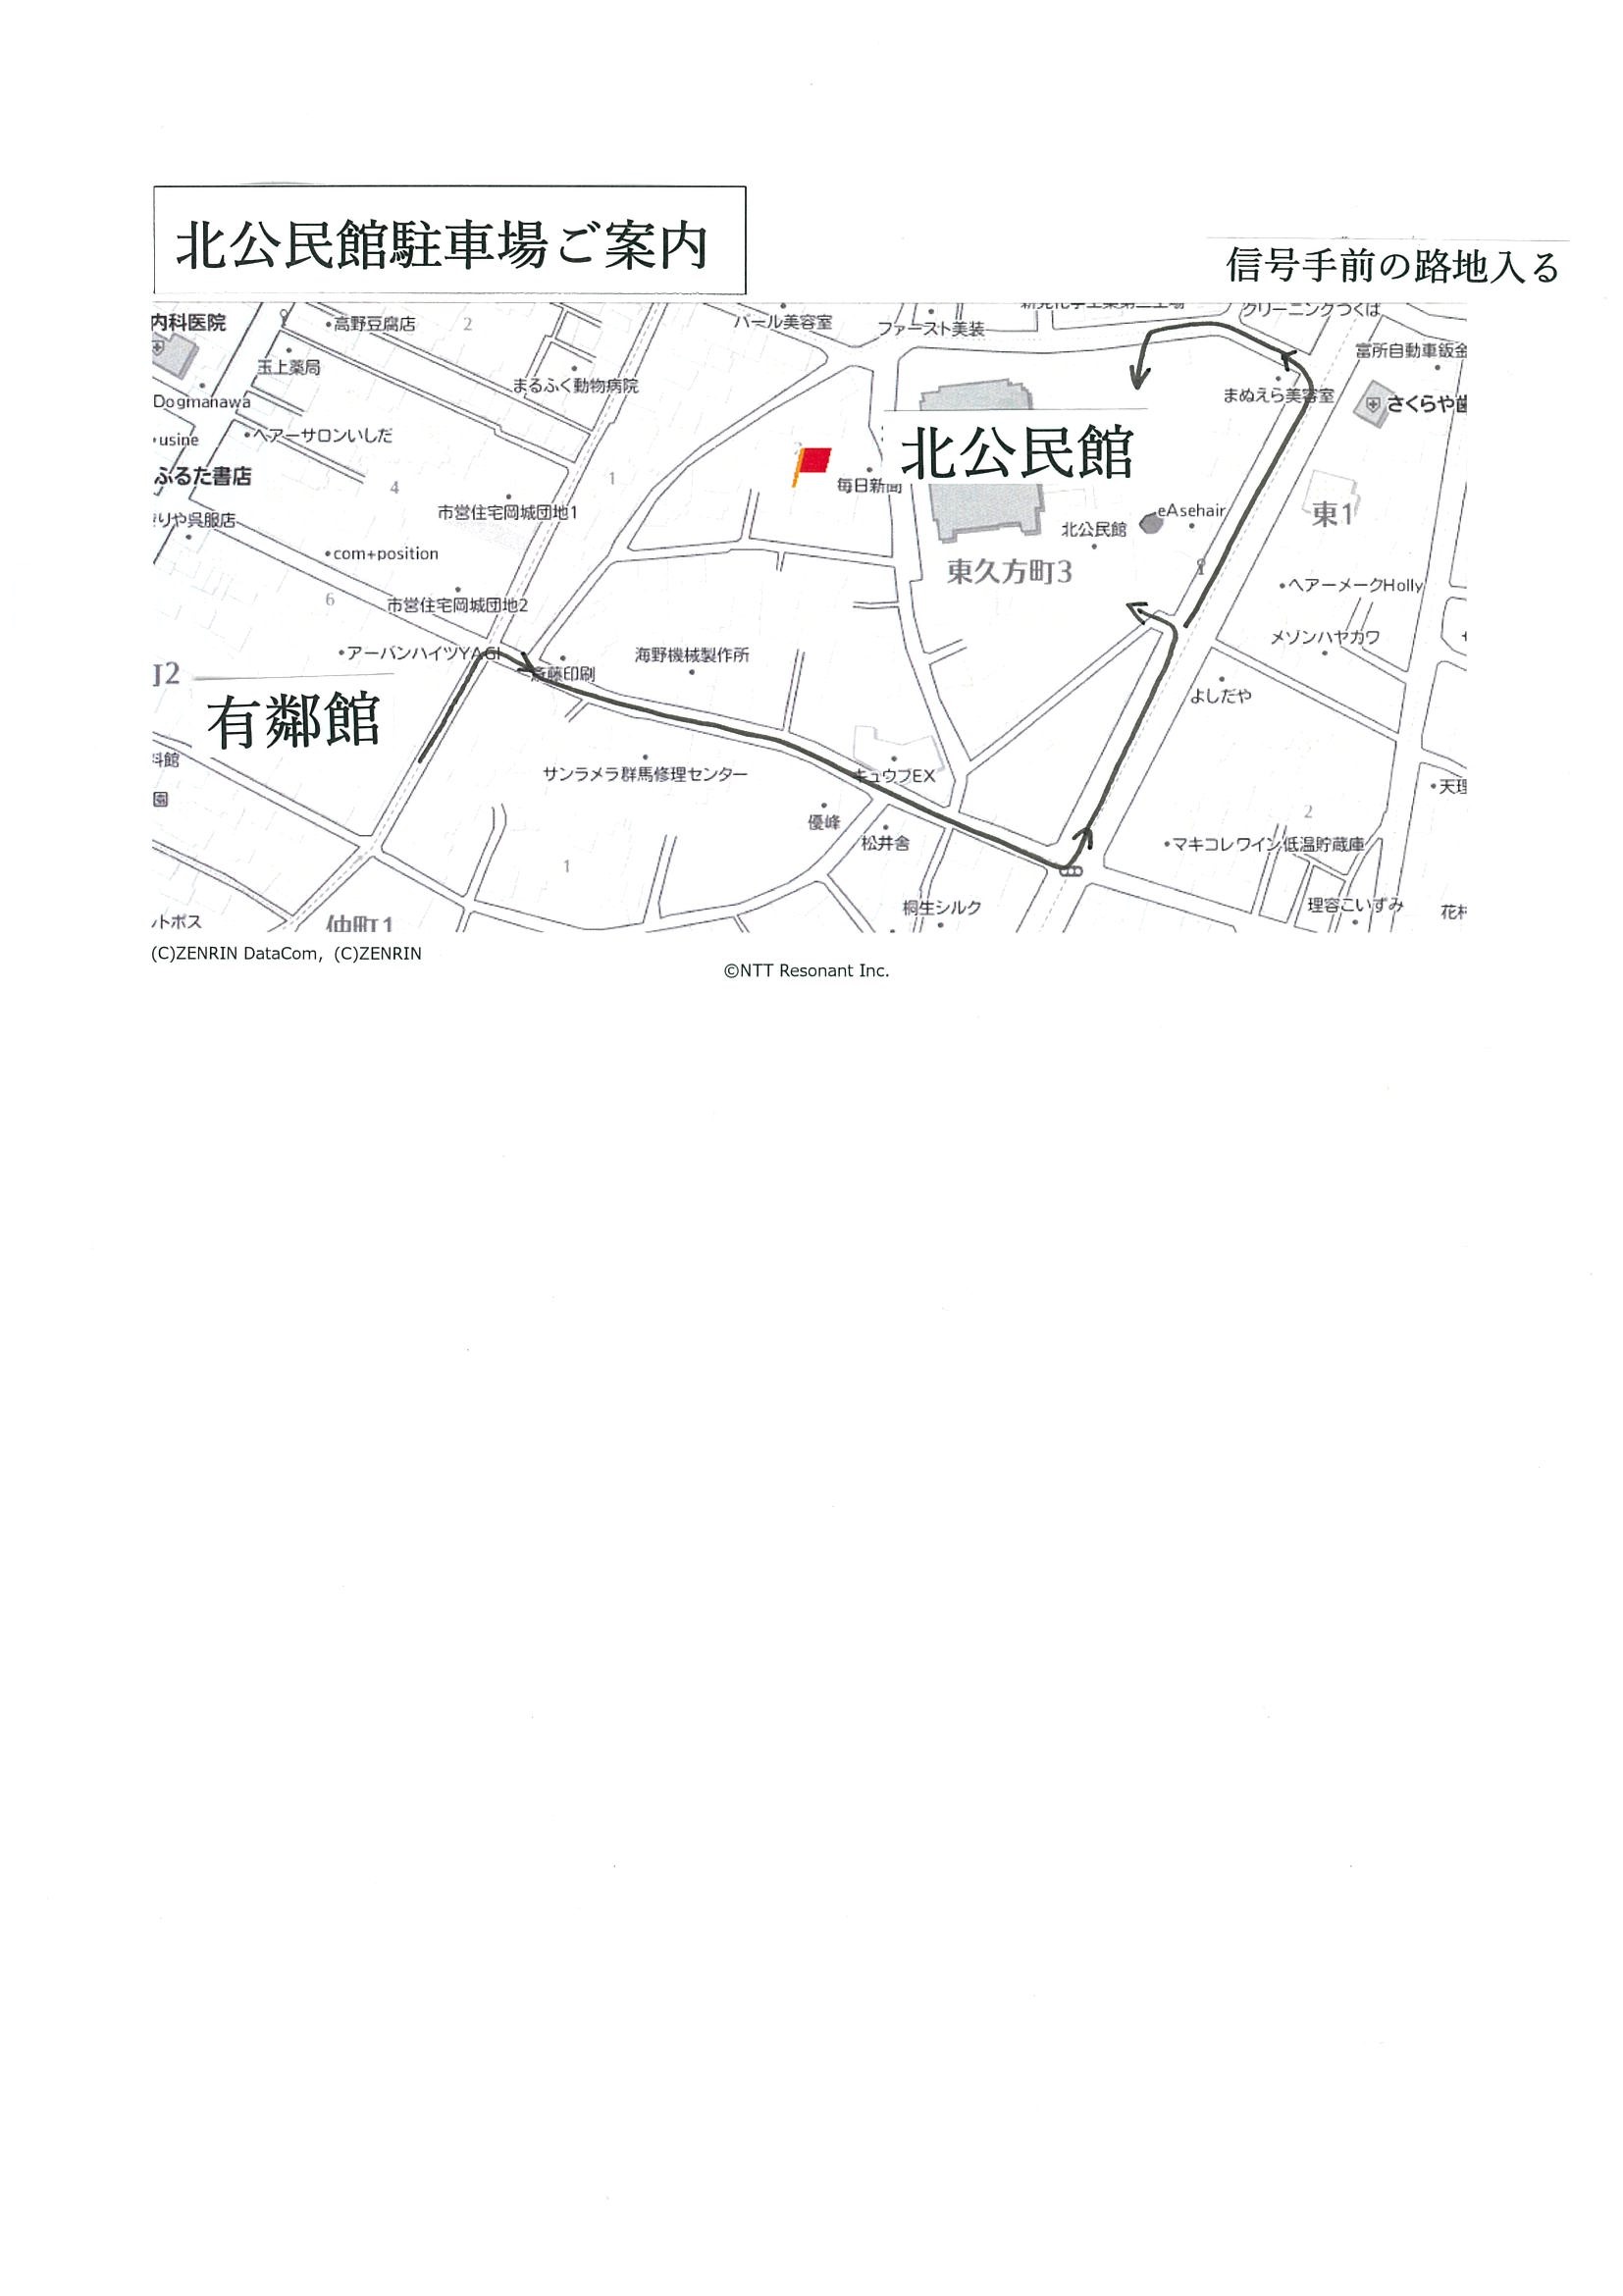 大川美術館開館30周年企画
      【鼎談】
「桐生の未来と美術館」
　開催いたします
